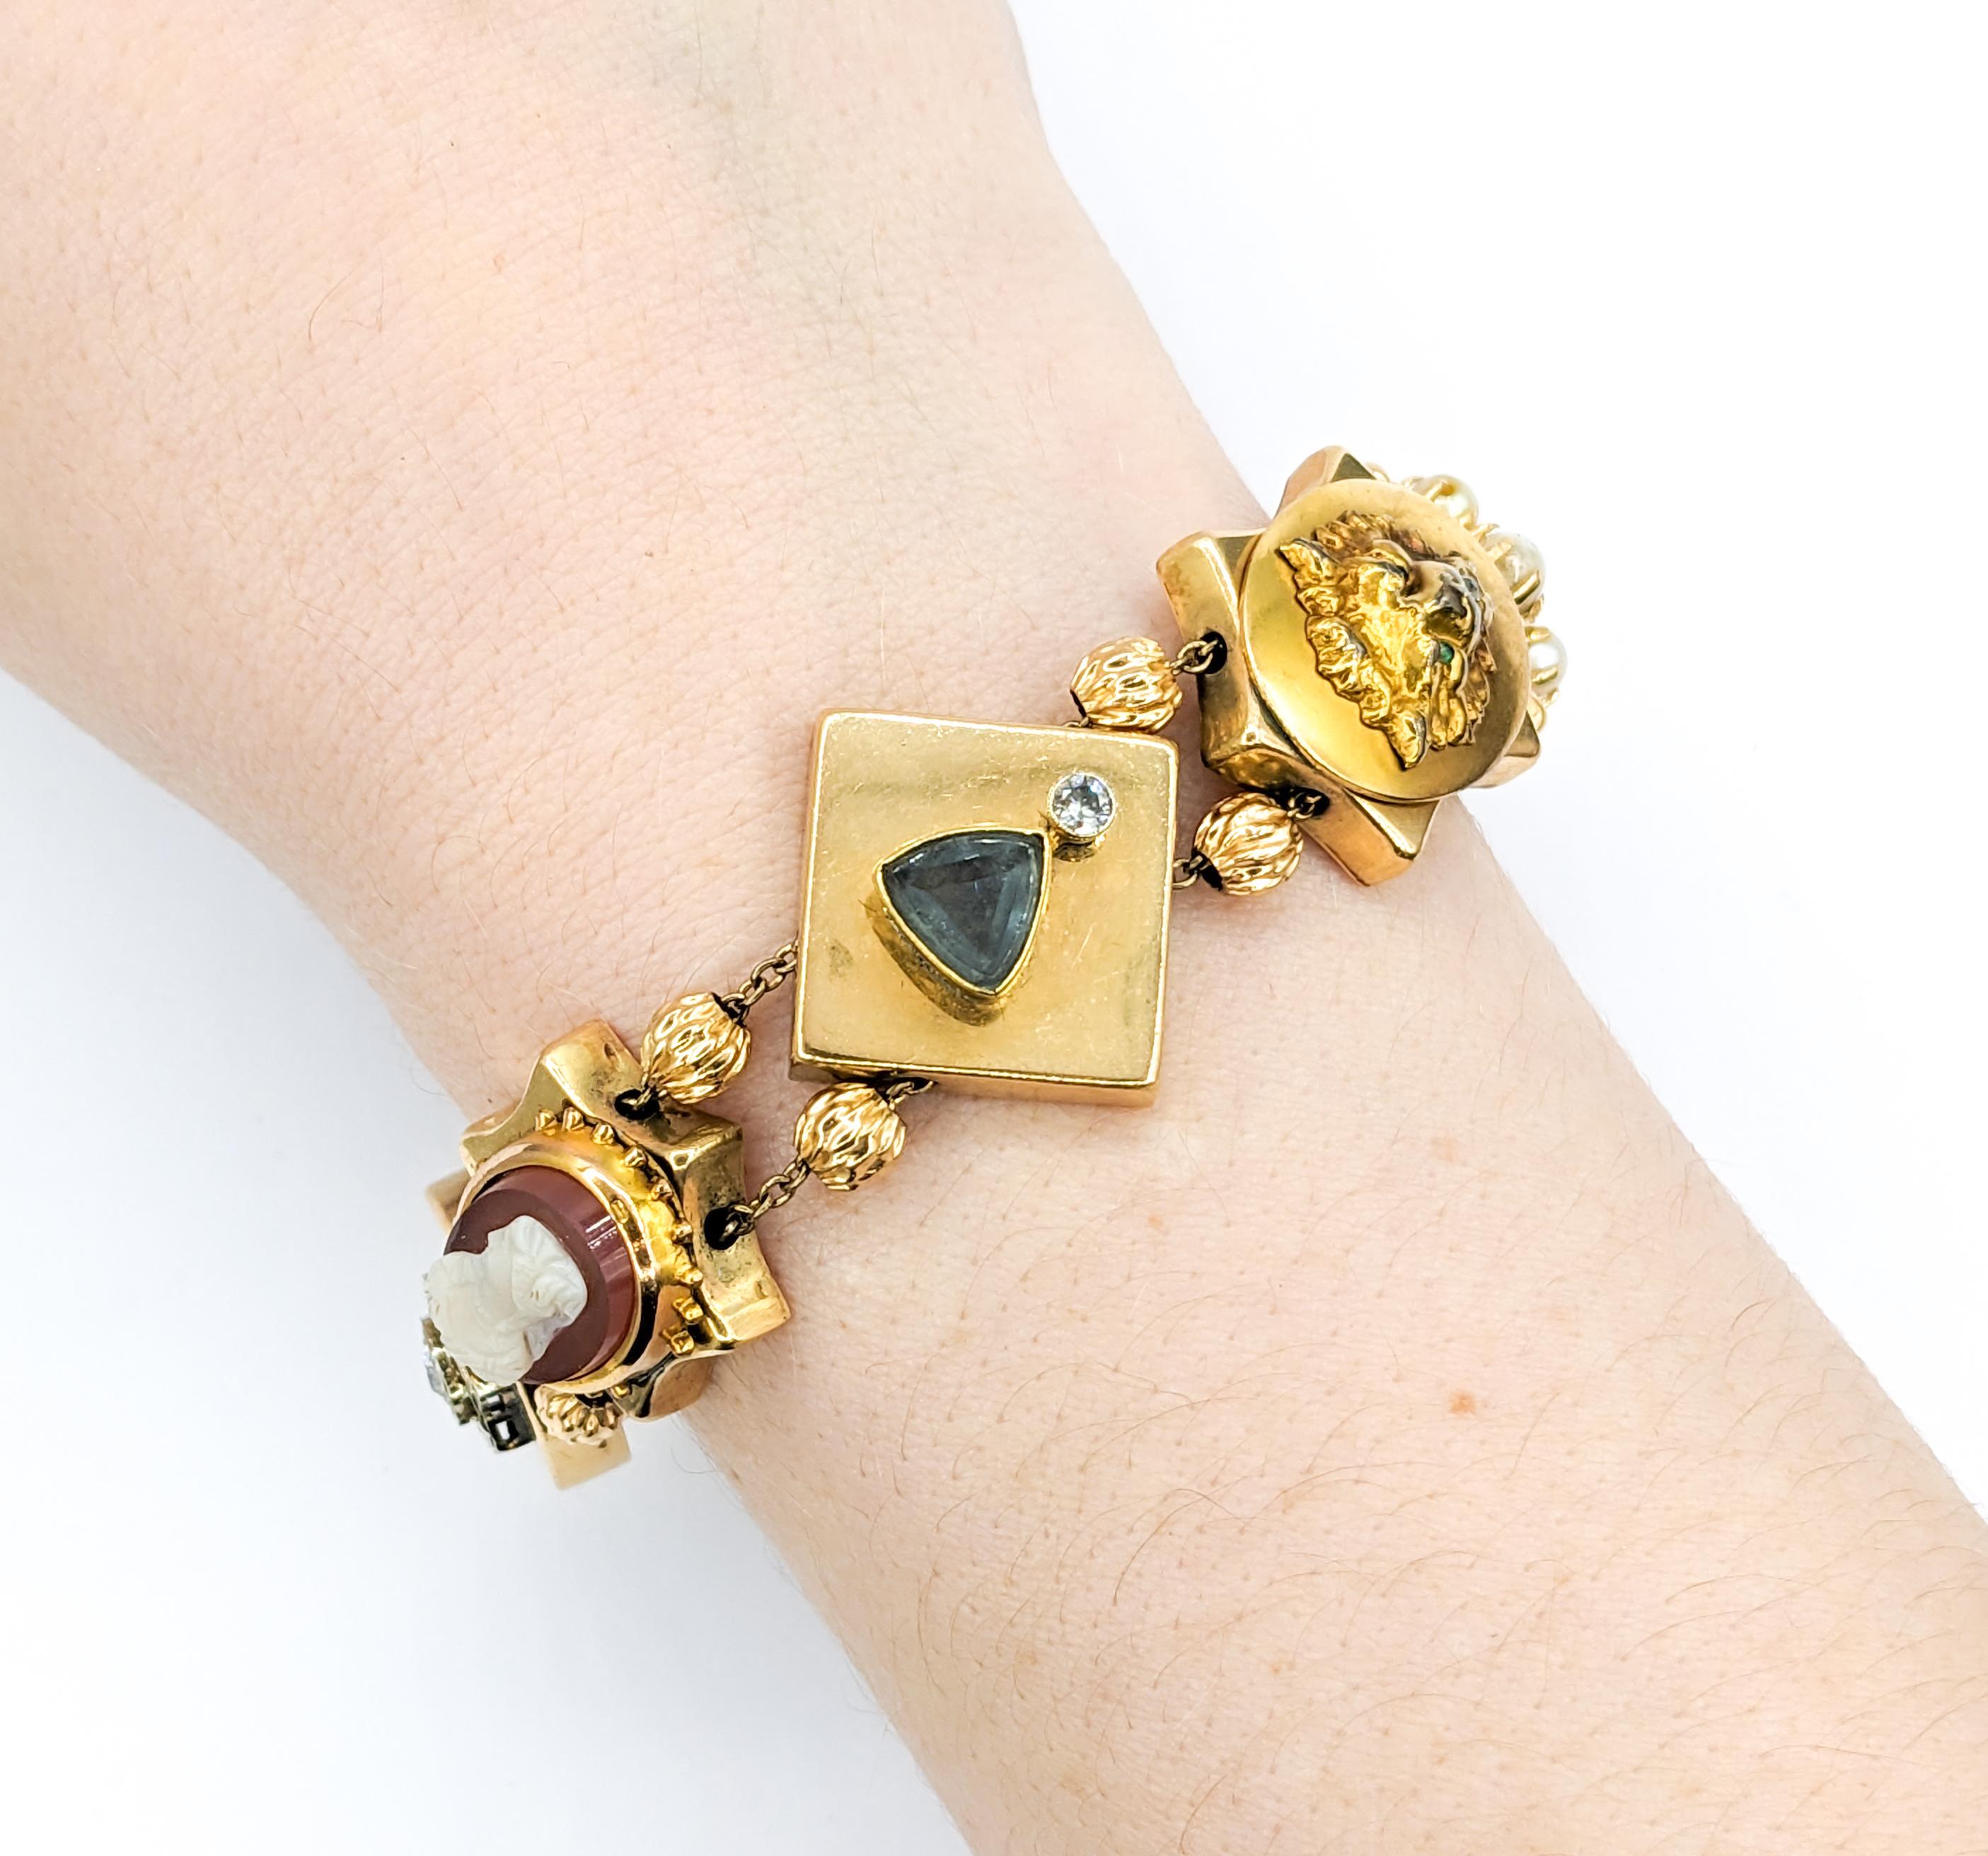 Bracelet de pierres précieuses en or jaune, diamants, émeraudes, rubis et perles, Stick Pin Slide

Vintage By est un bracelet coulissant fantaisiste en or jaune 14 carats. Ce bracelet unique présente une série de conversions d'épingles à bâtons sur